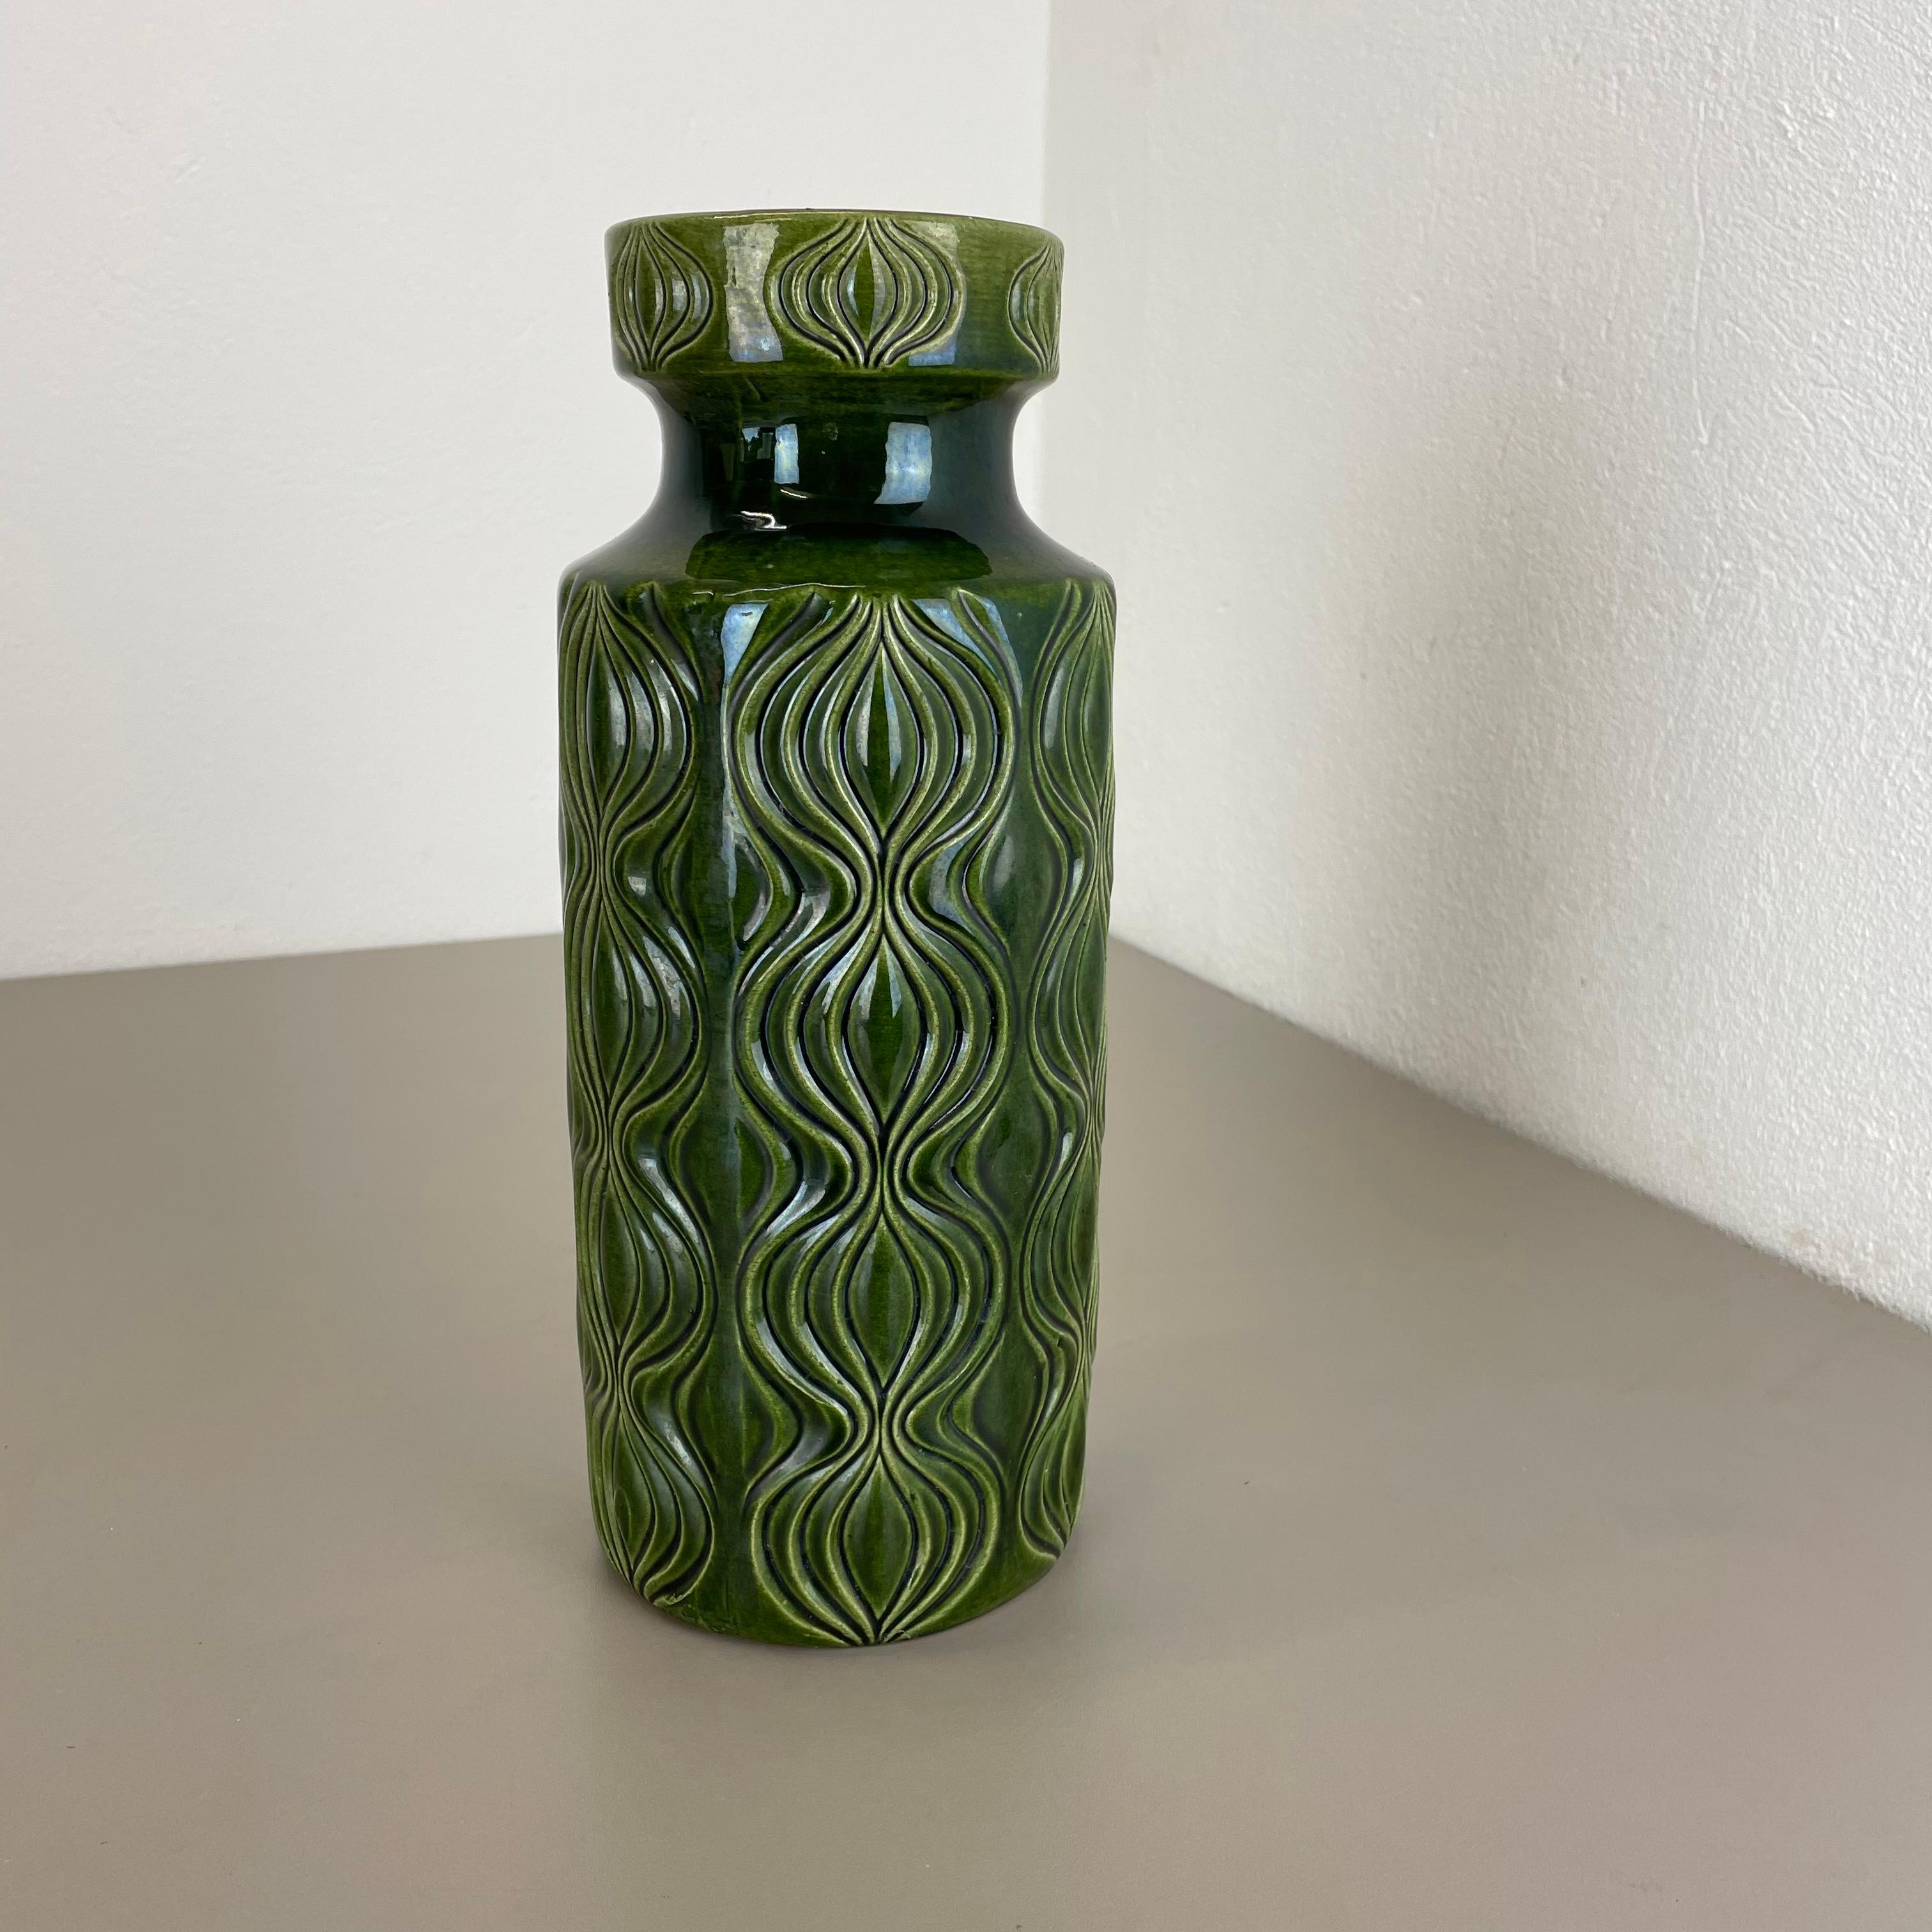 Artikel:

Fette Lava-Kunstvase


Produzent:

Scheurich, Deutschland


Design/One:

Nr. 285-30



Jahrzehnt:

1970s


Beschreibung:

Diese originelle Vintage-Vase wurde in den 1970er Jahren in Deutschland hergestellt. Sie ist